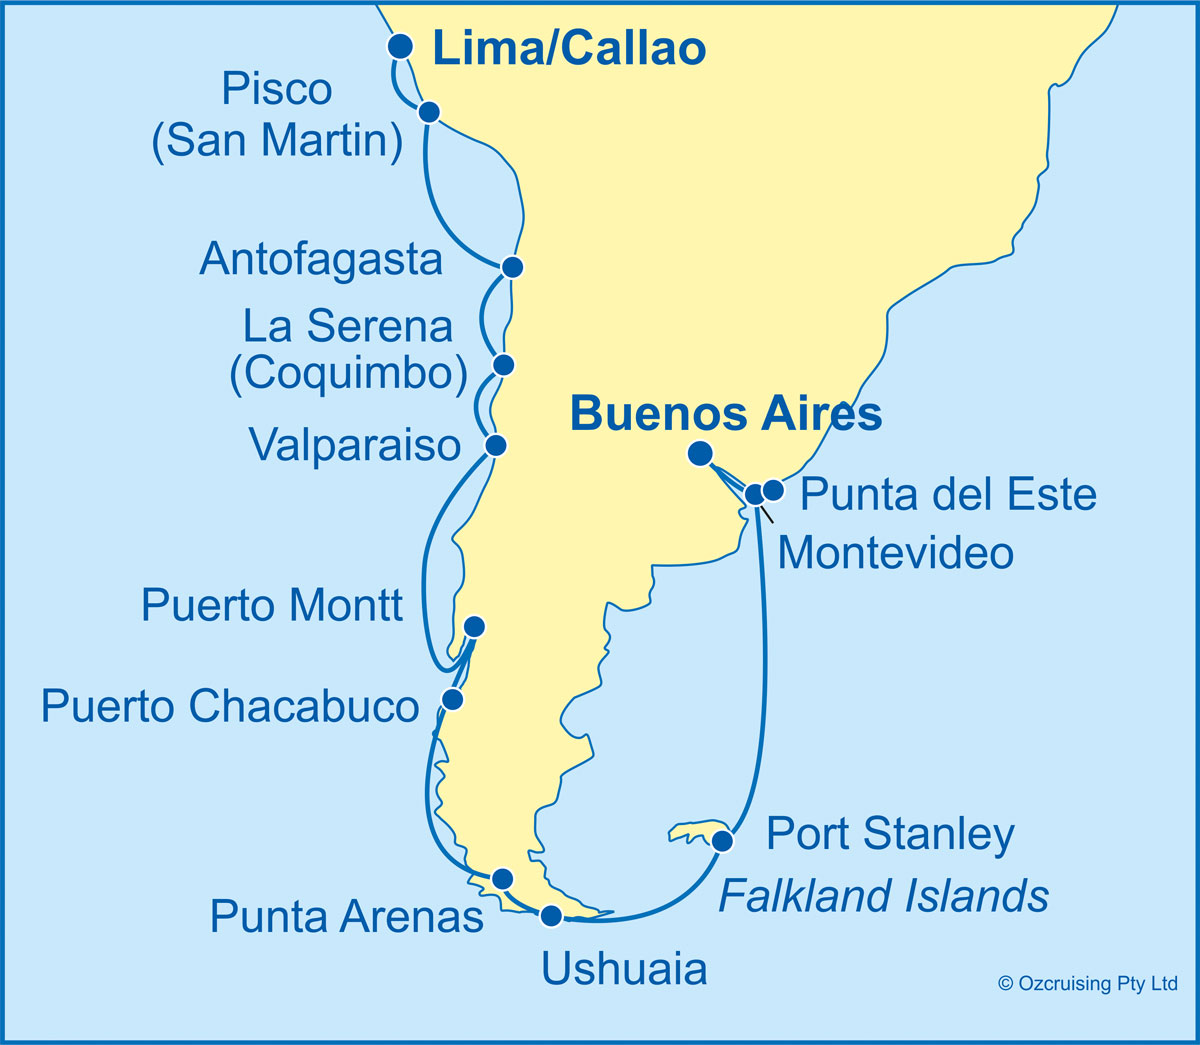 Azamara Pursuit Lima to Buenos Aires - Ozcruising.com.au